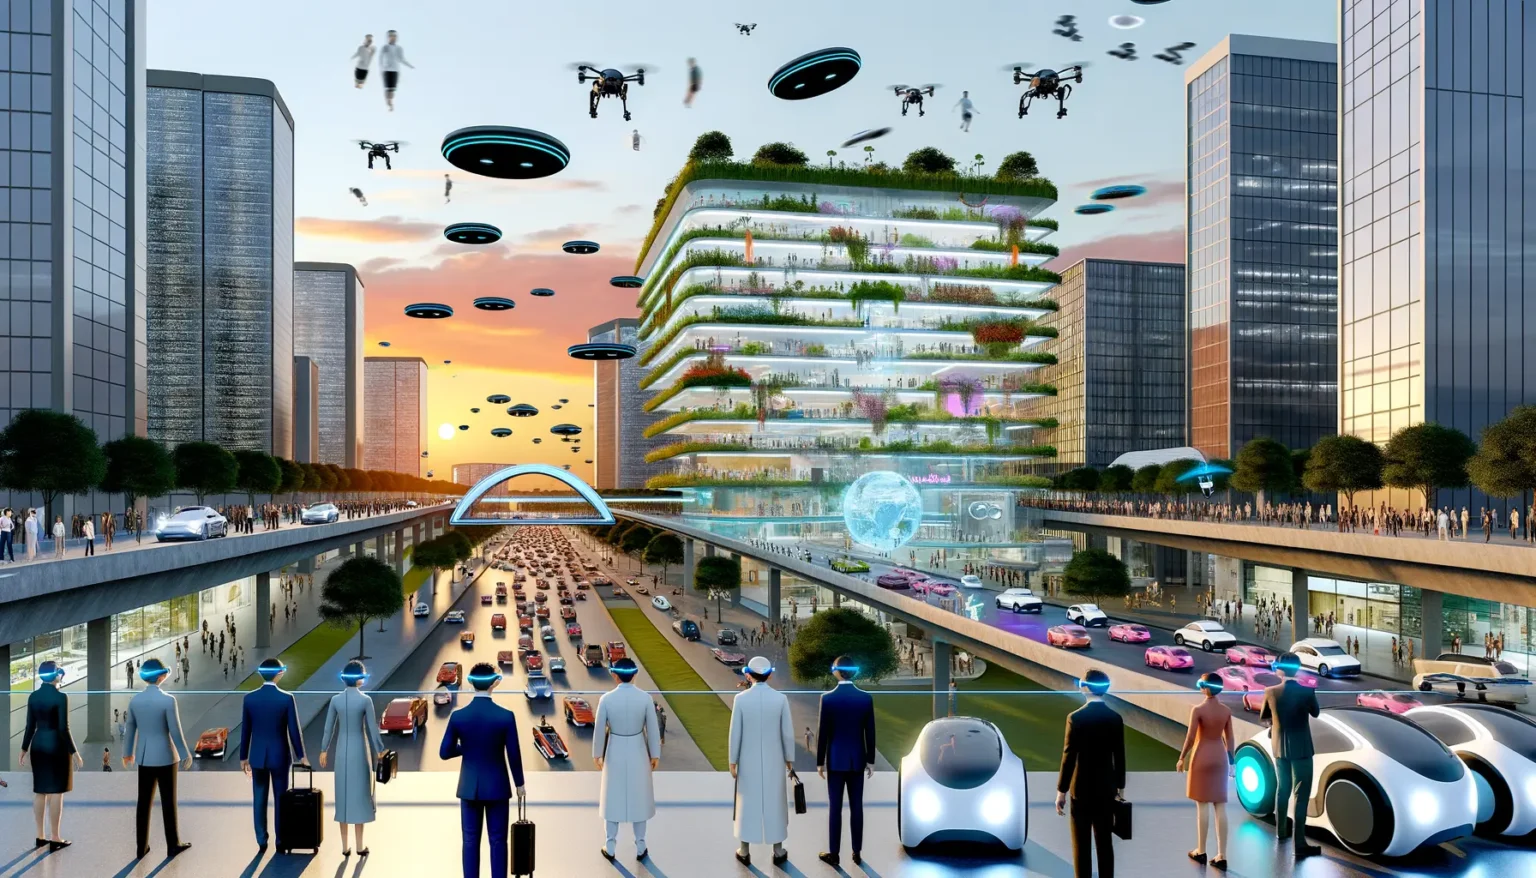 Futuristische Stadtansicht mit mehrstöckigen Gebäuden, deren Fassaden von Gärten überzogen sind. Menschen und humanoide Roboter stehen auf einer Aussichtsplattform und blicken auf eine belebte Straße mit herkömmlichen und autonomen Fahrzeugen. Im Himmel schweben verschiedene Drohnen und fliegende Autos. Der Himmel färbt sich von blau zu orange, während im Hintergrund ein glasüberdachtes Bauwerk und weitere hochmoderne Wolkenkratzer zu sehen sind.